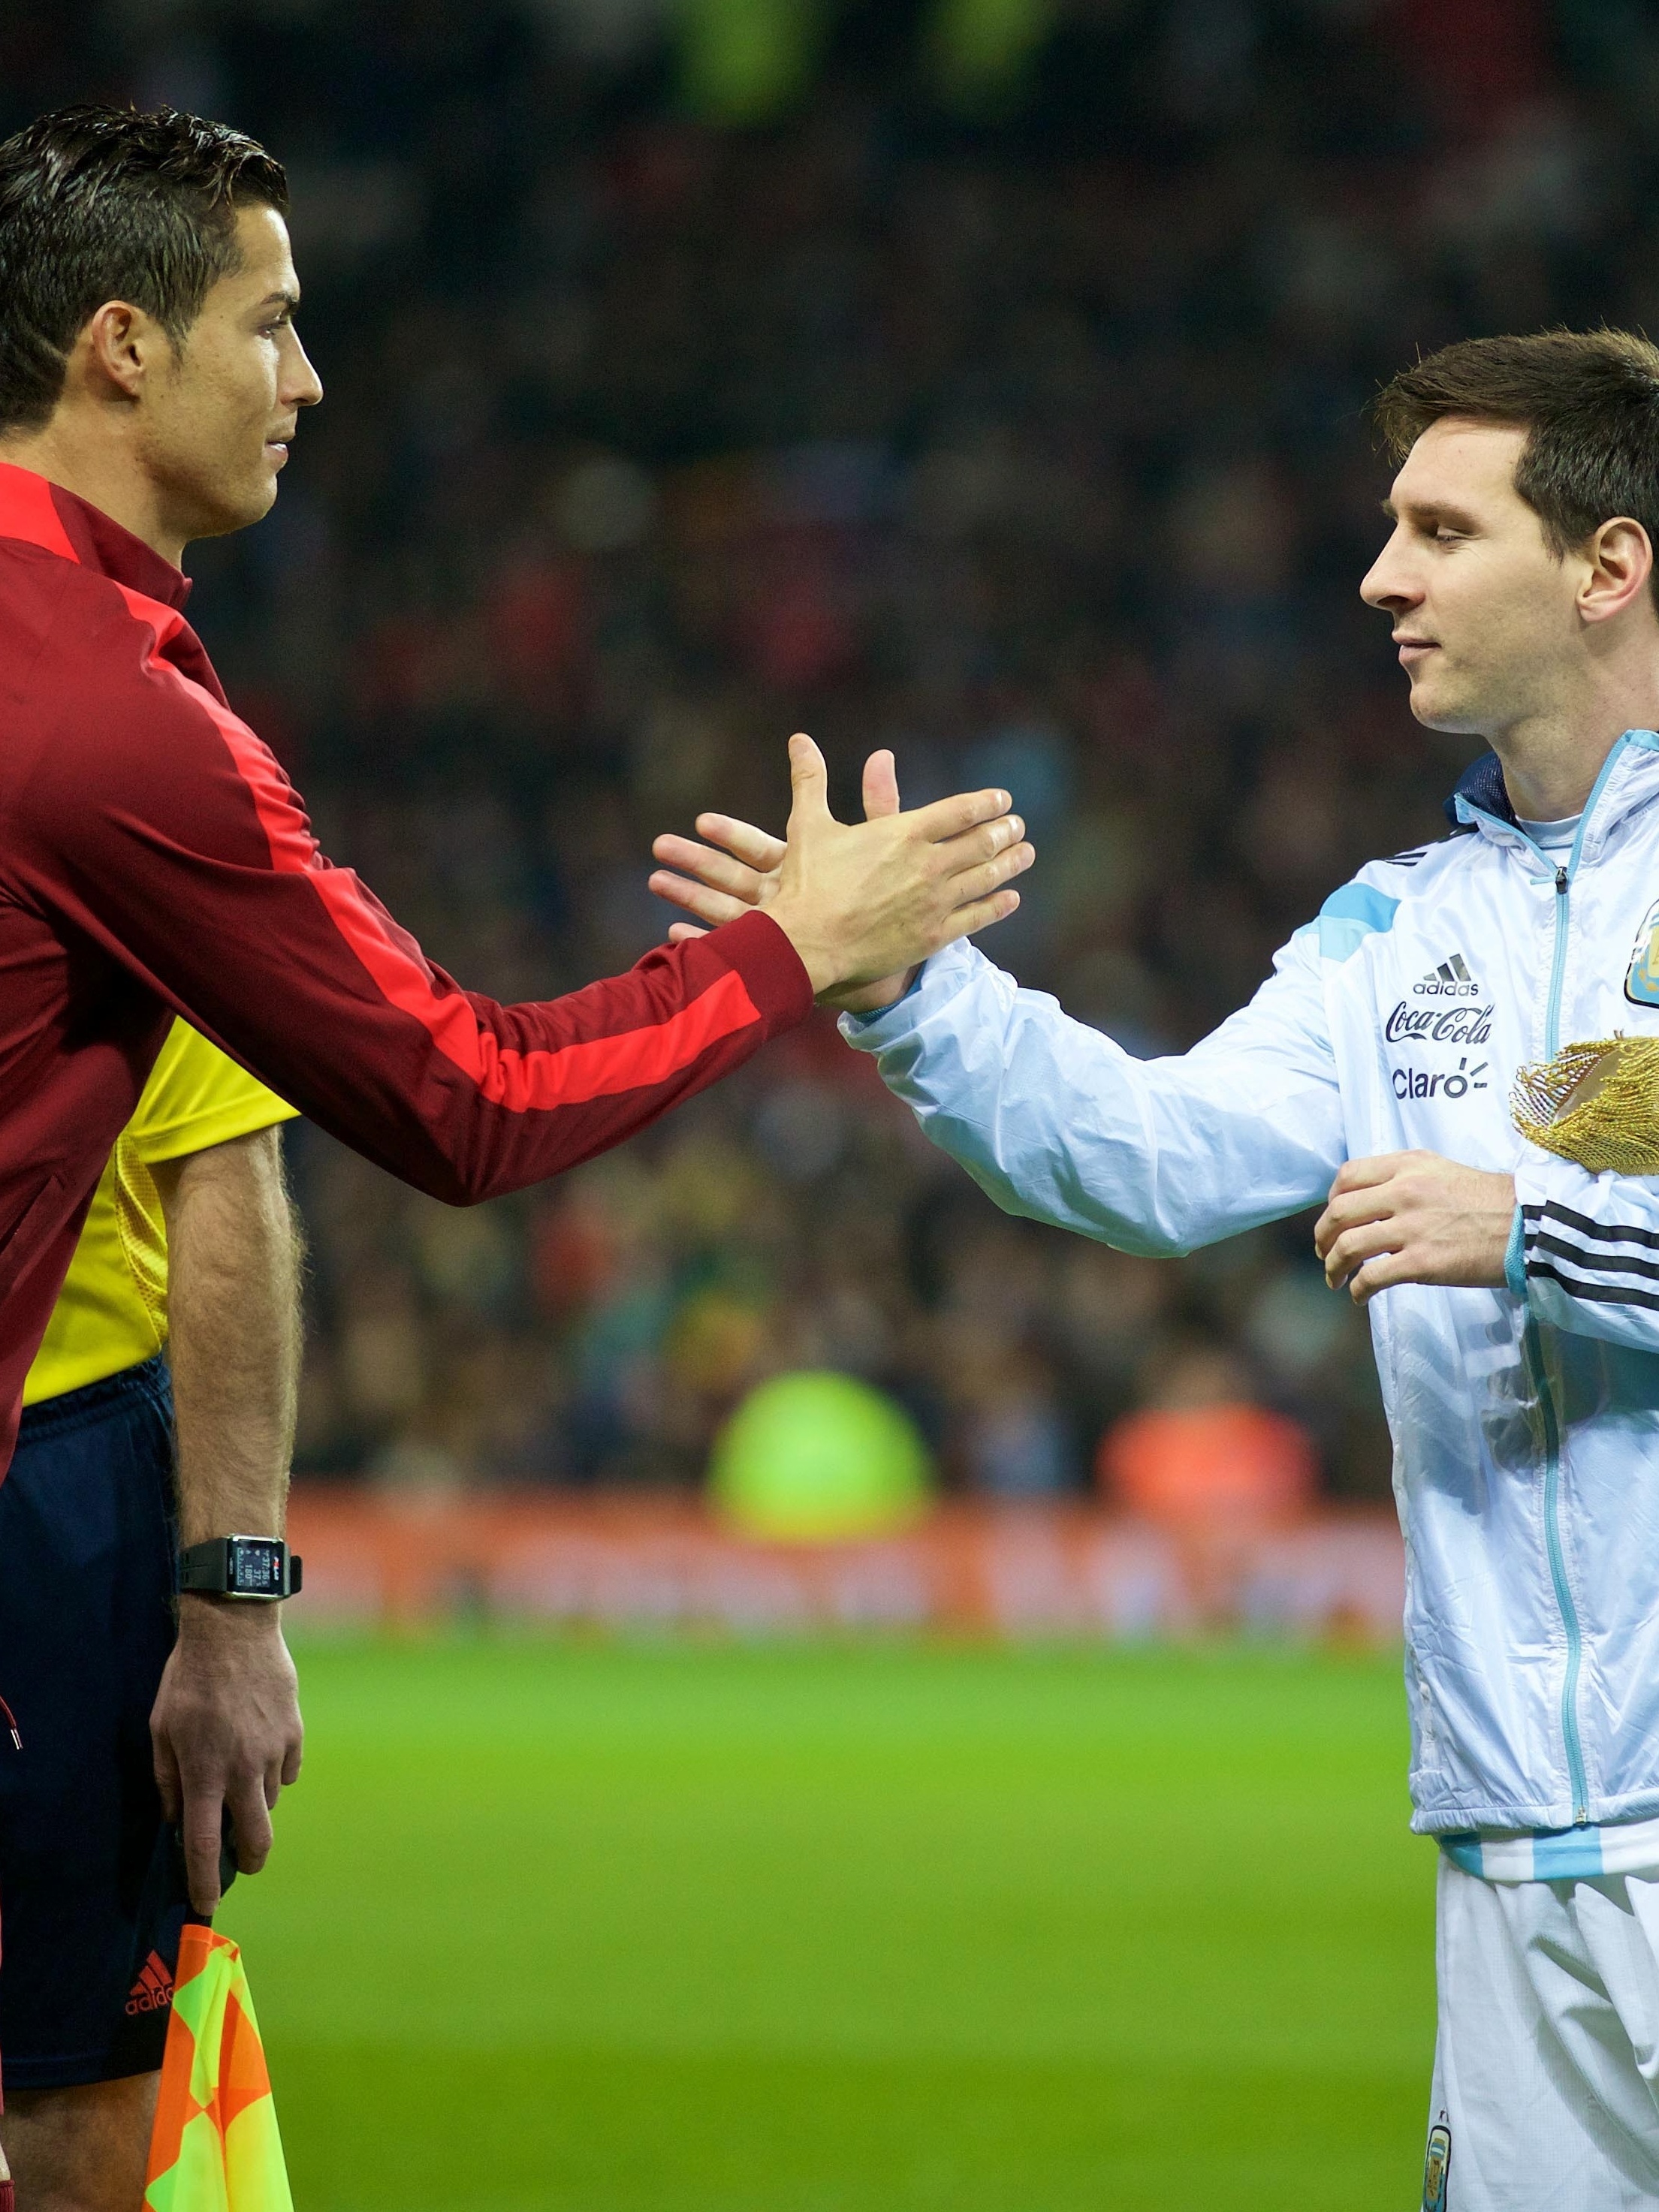 O pormenor que passou despercebido na fotografia de Messi e Ronaldo